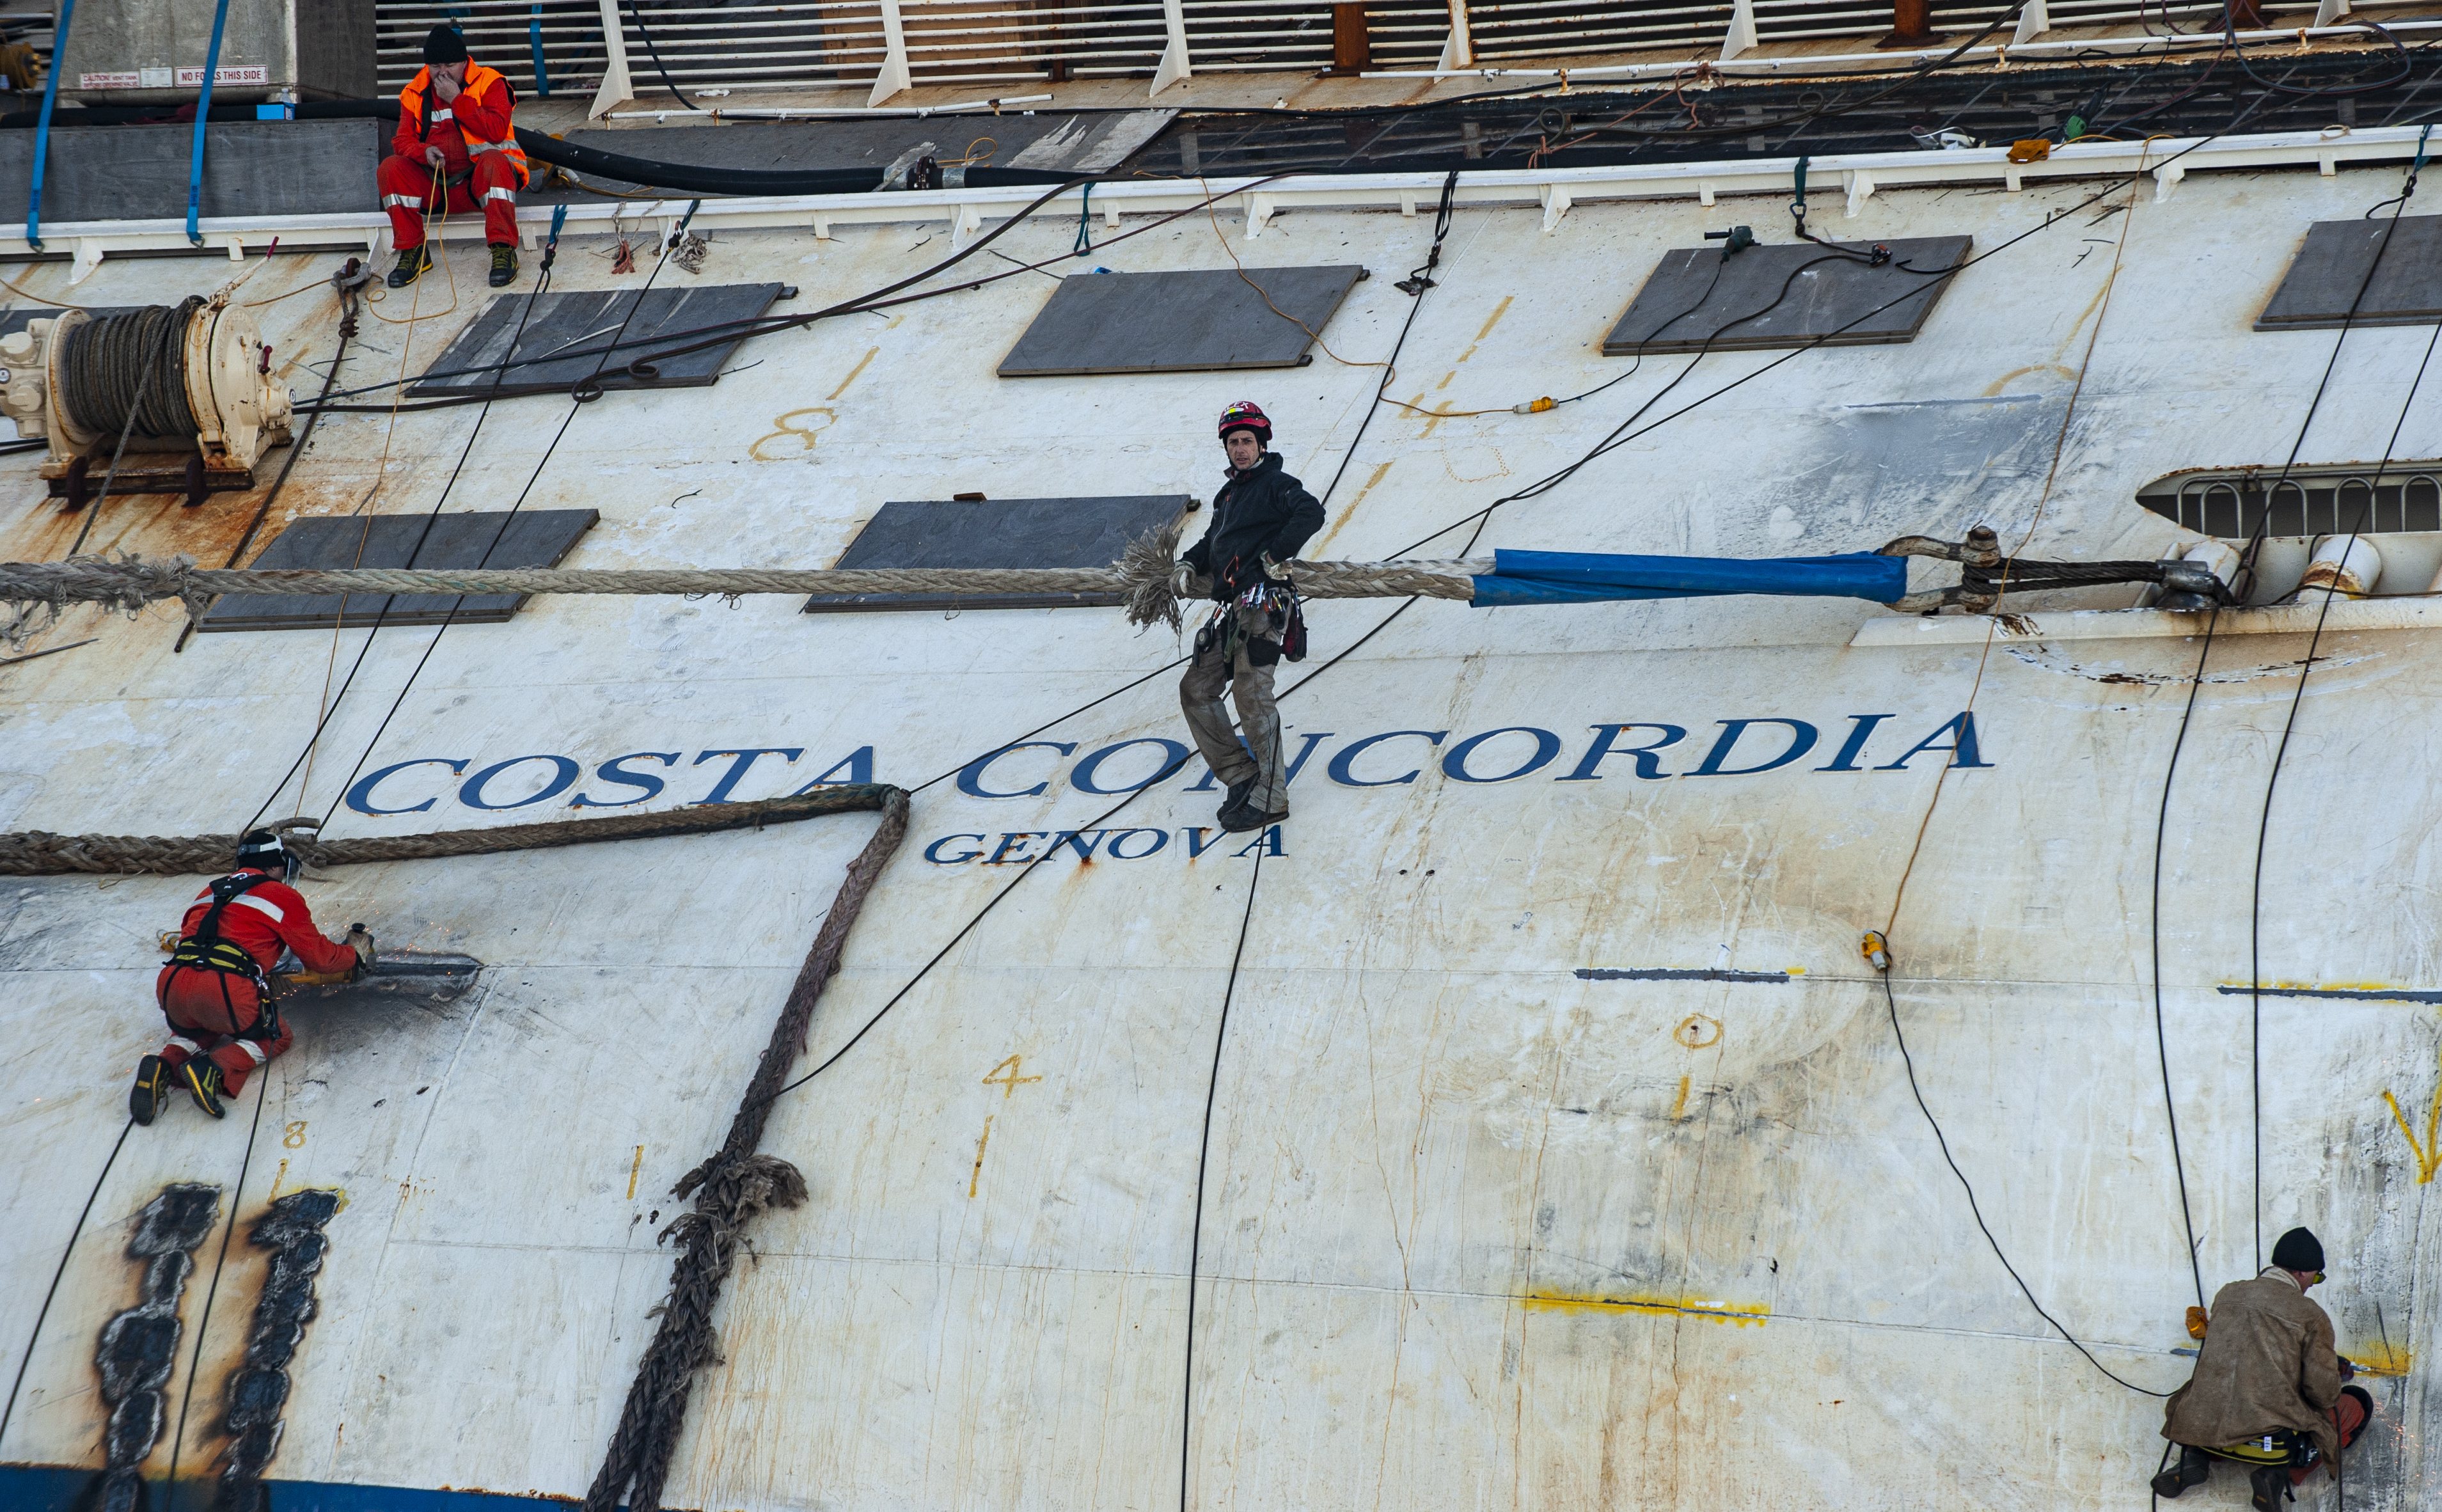 Há 10 anos, o navio Costa Concordia afundou ao largo da costa italiana, tendo resultado na morte de 32 pessoas -- 27 passageiros, cinco membros da tripulação e um elemento da equipa de socorro